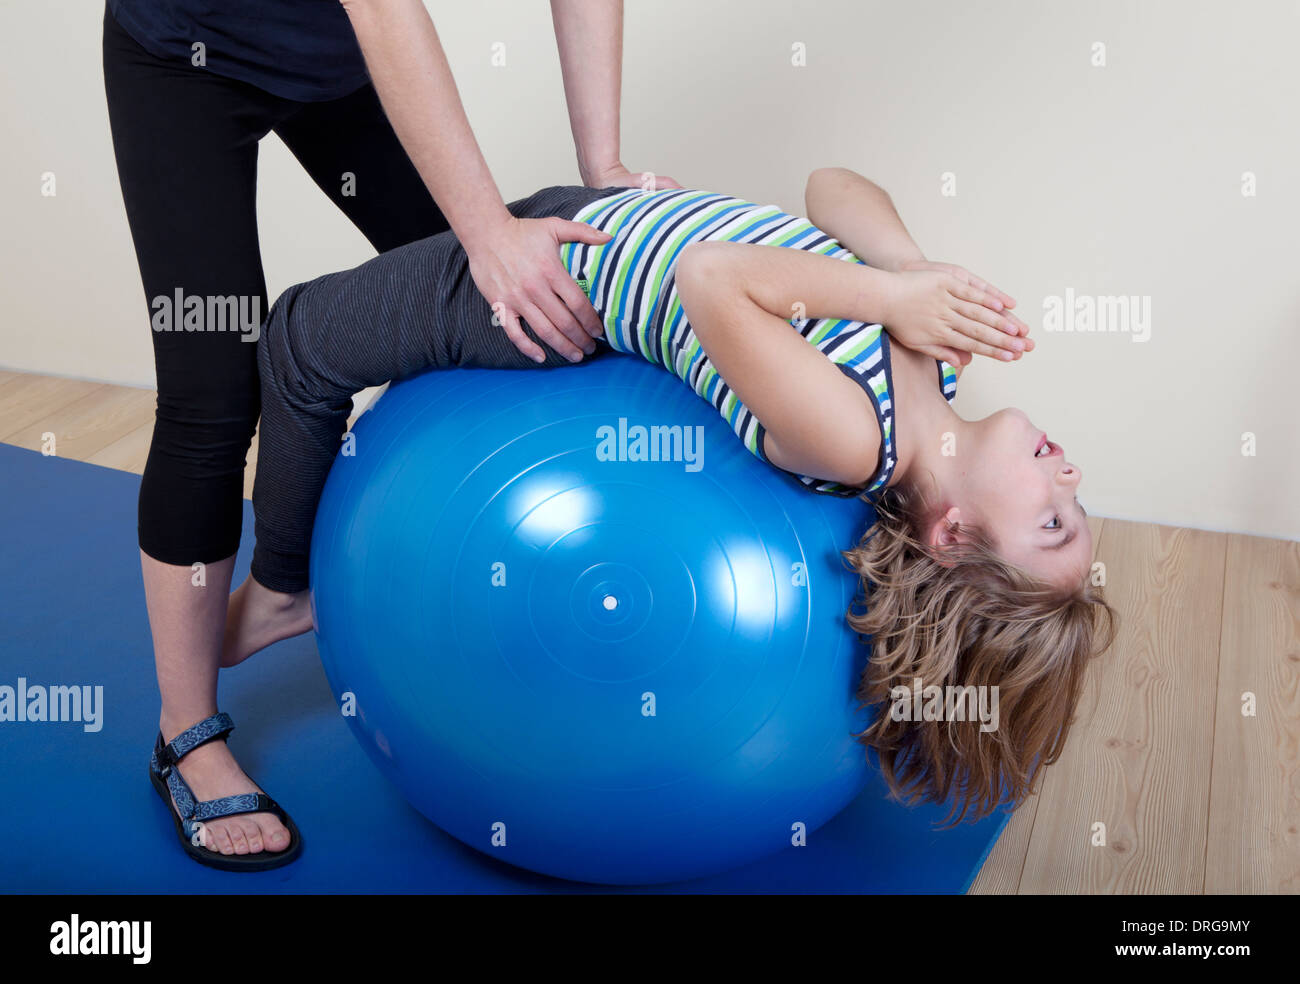 Kinder Turnen auf eine Kugel, ein Physiotherapeut zeigt Übungen für den Rücken Stockfoto